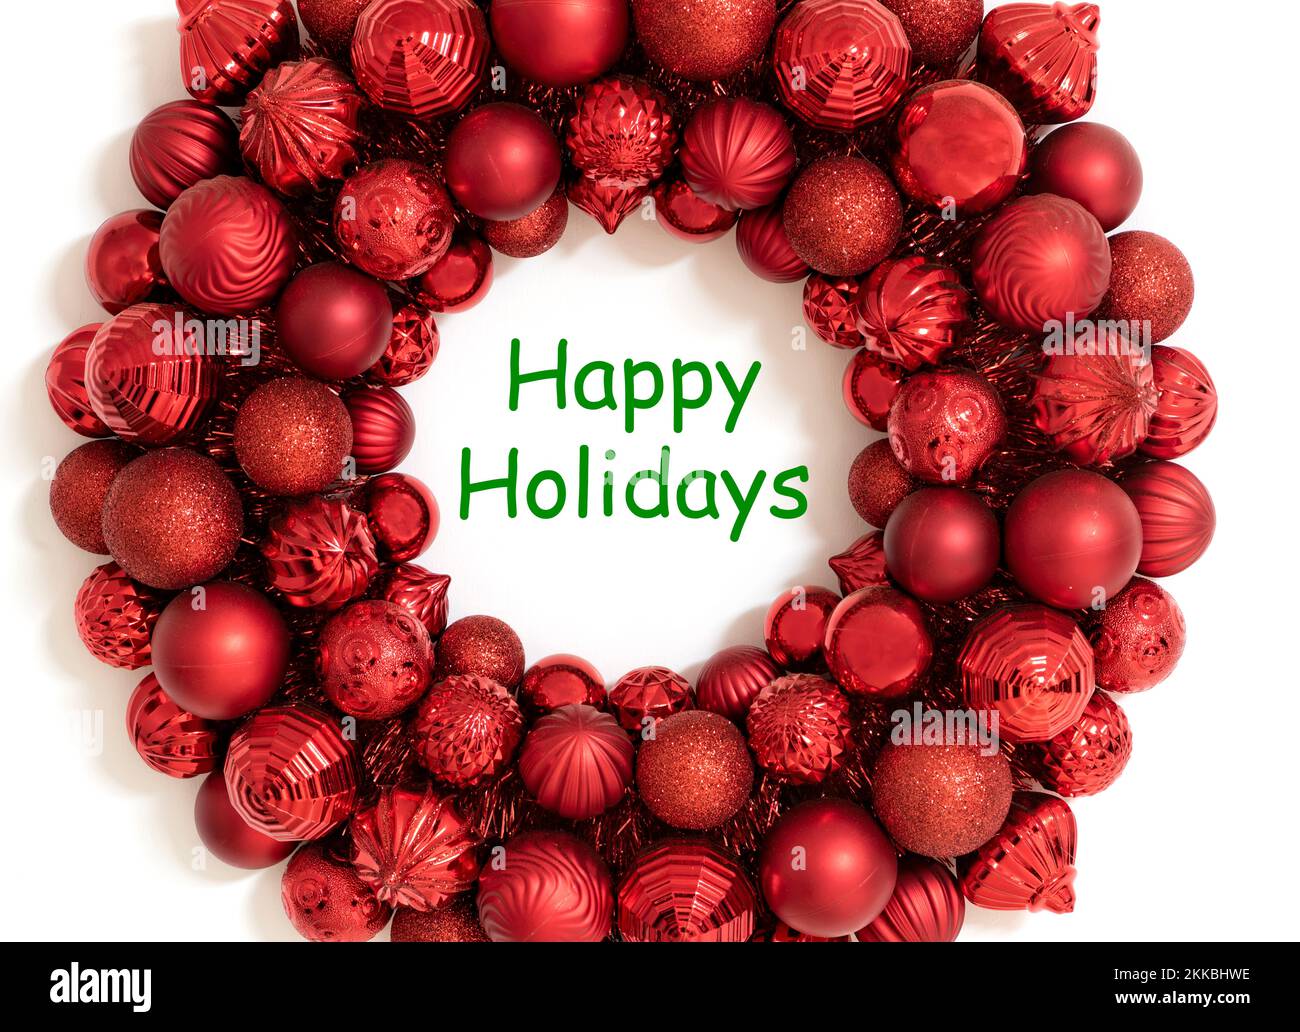 Buon biglietto di auguri o sfondo natalizio con testo verde Happy Holidays. Corona rossa fatta di ornamenti rossi di natale. Foto Stock